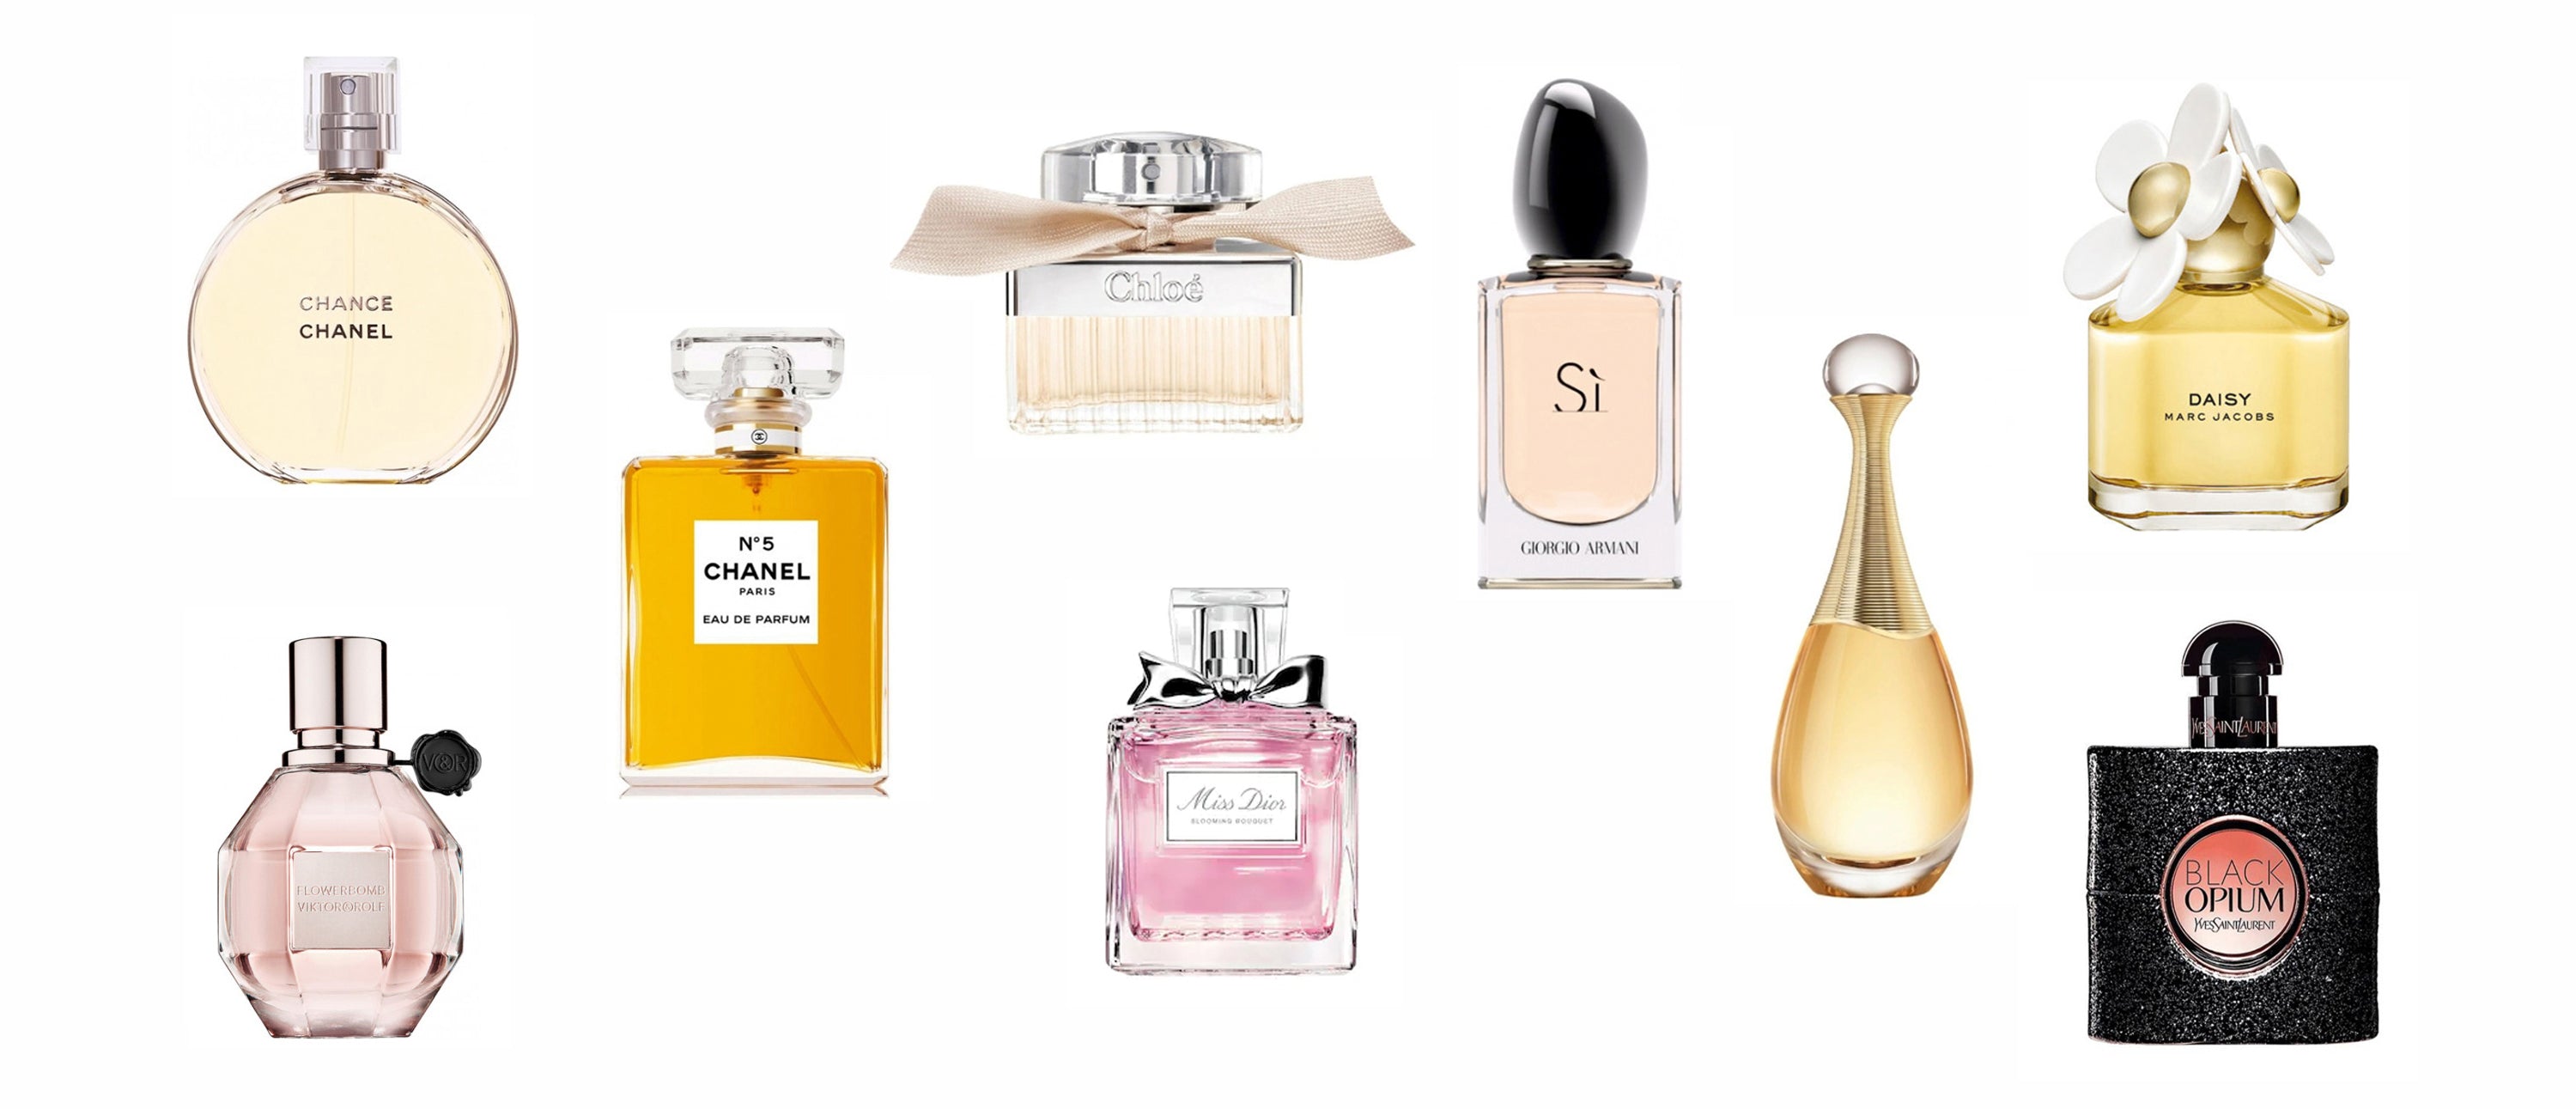 Allure eau de parfum Chanel perfume - a fragrance for women 1999